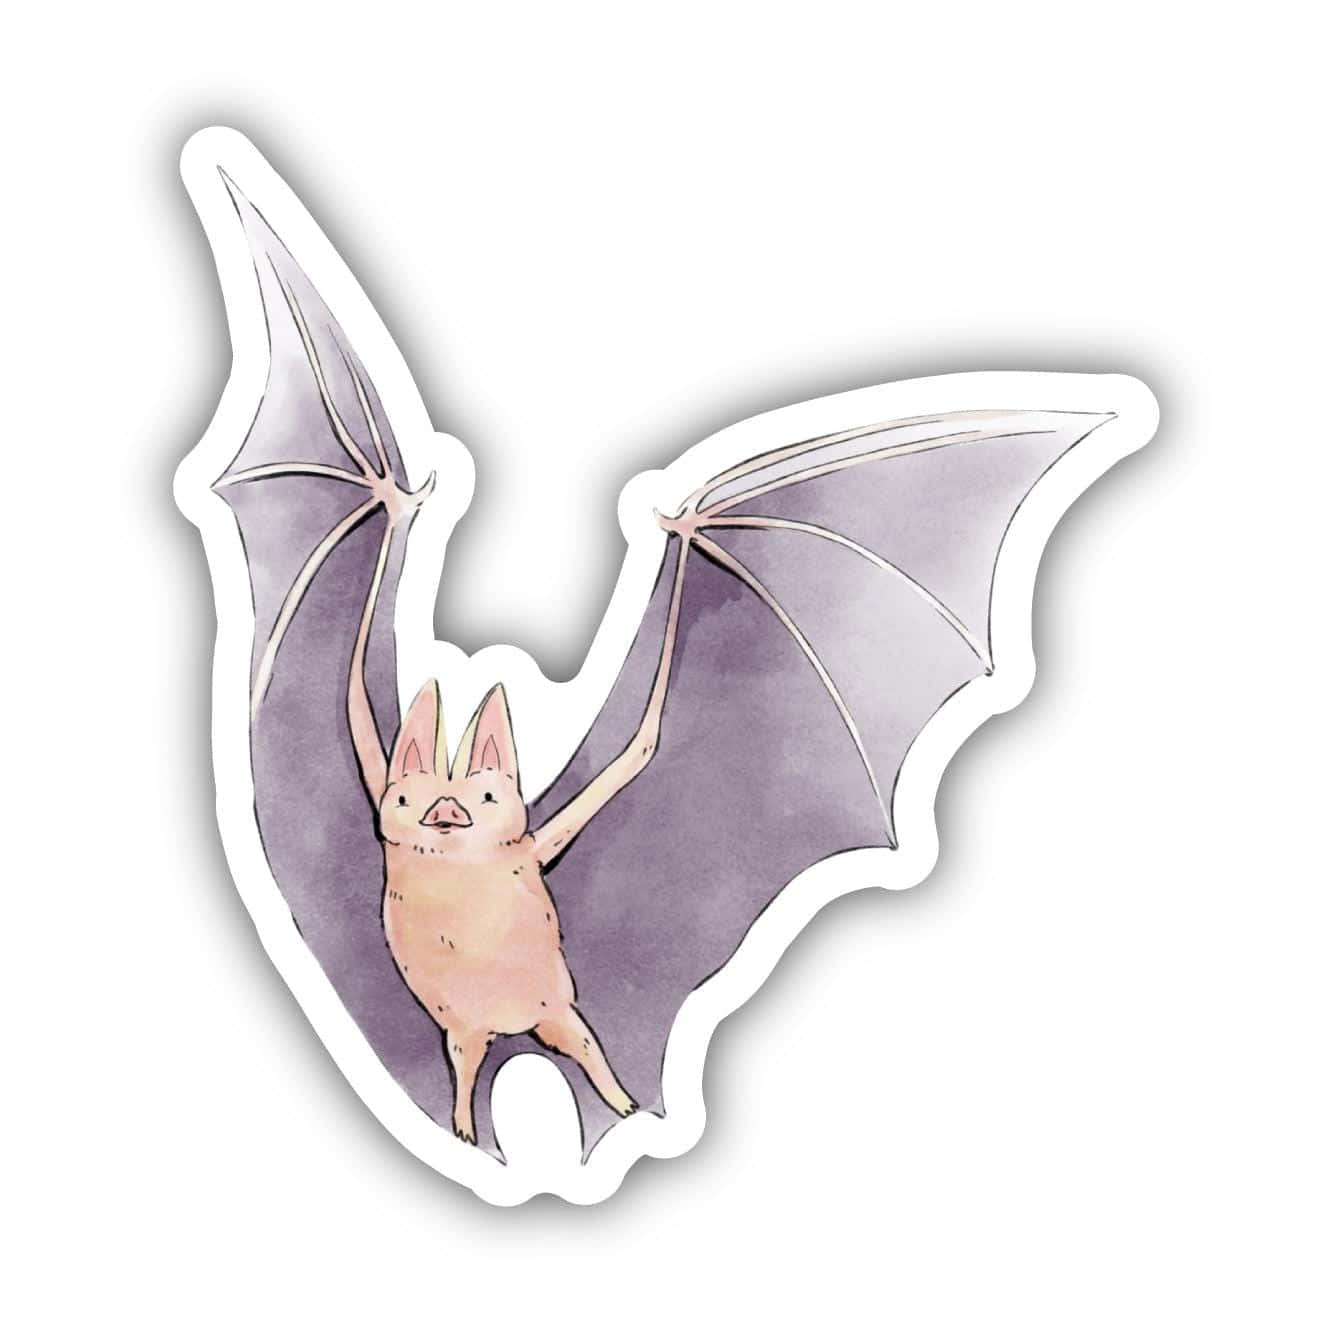 Bat Pictures